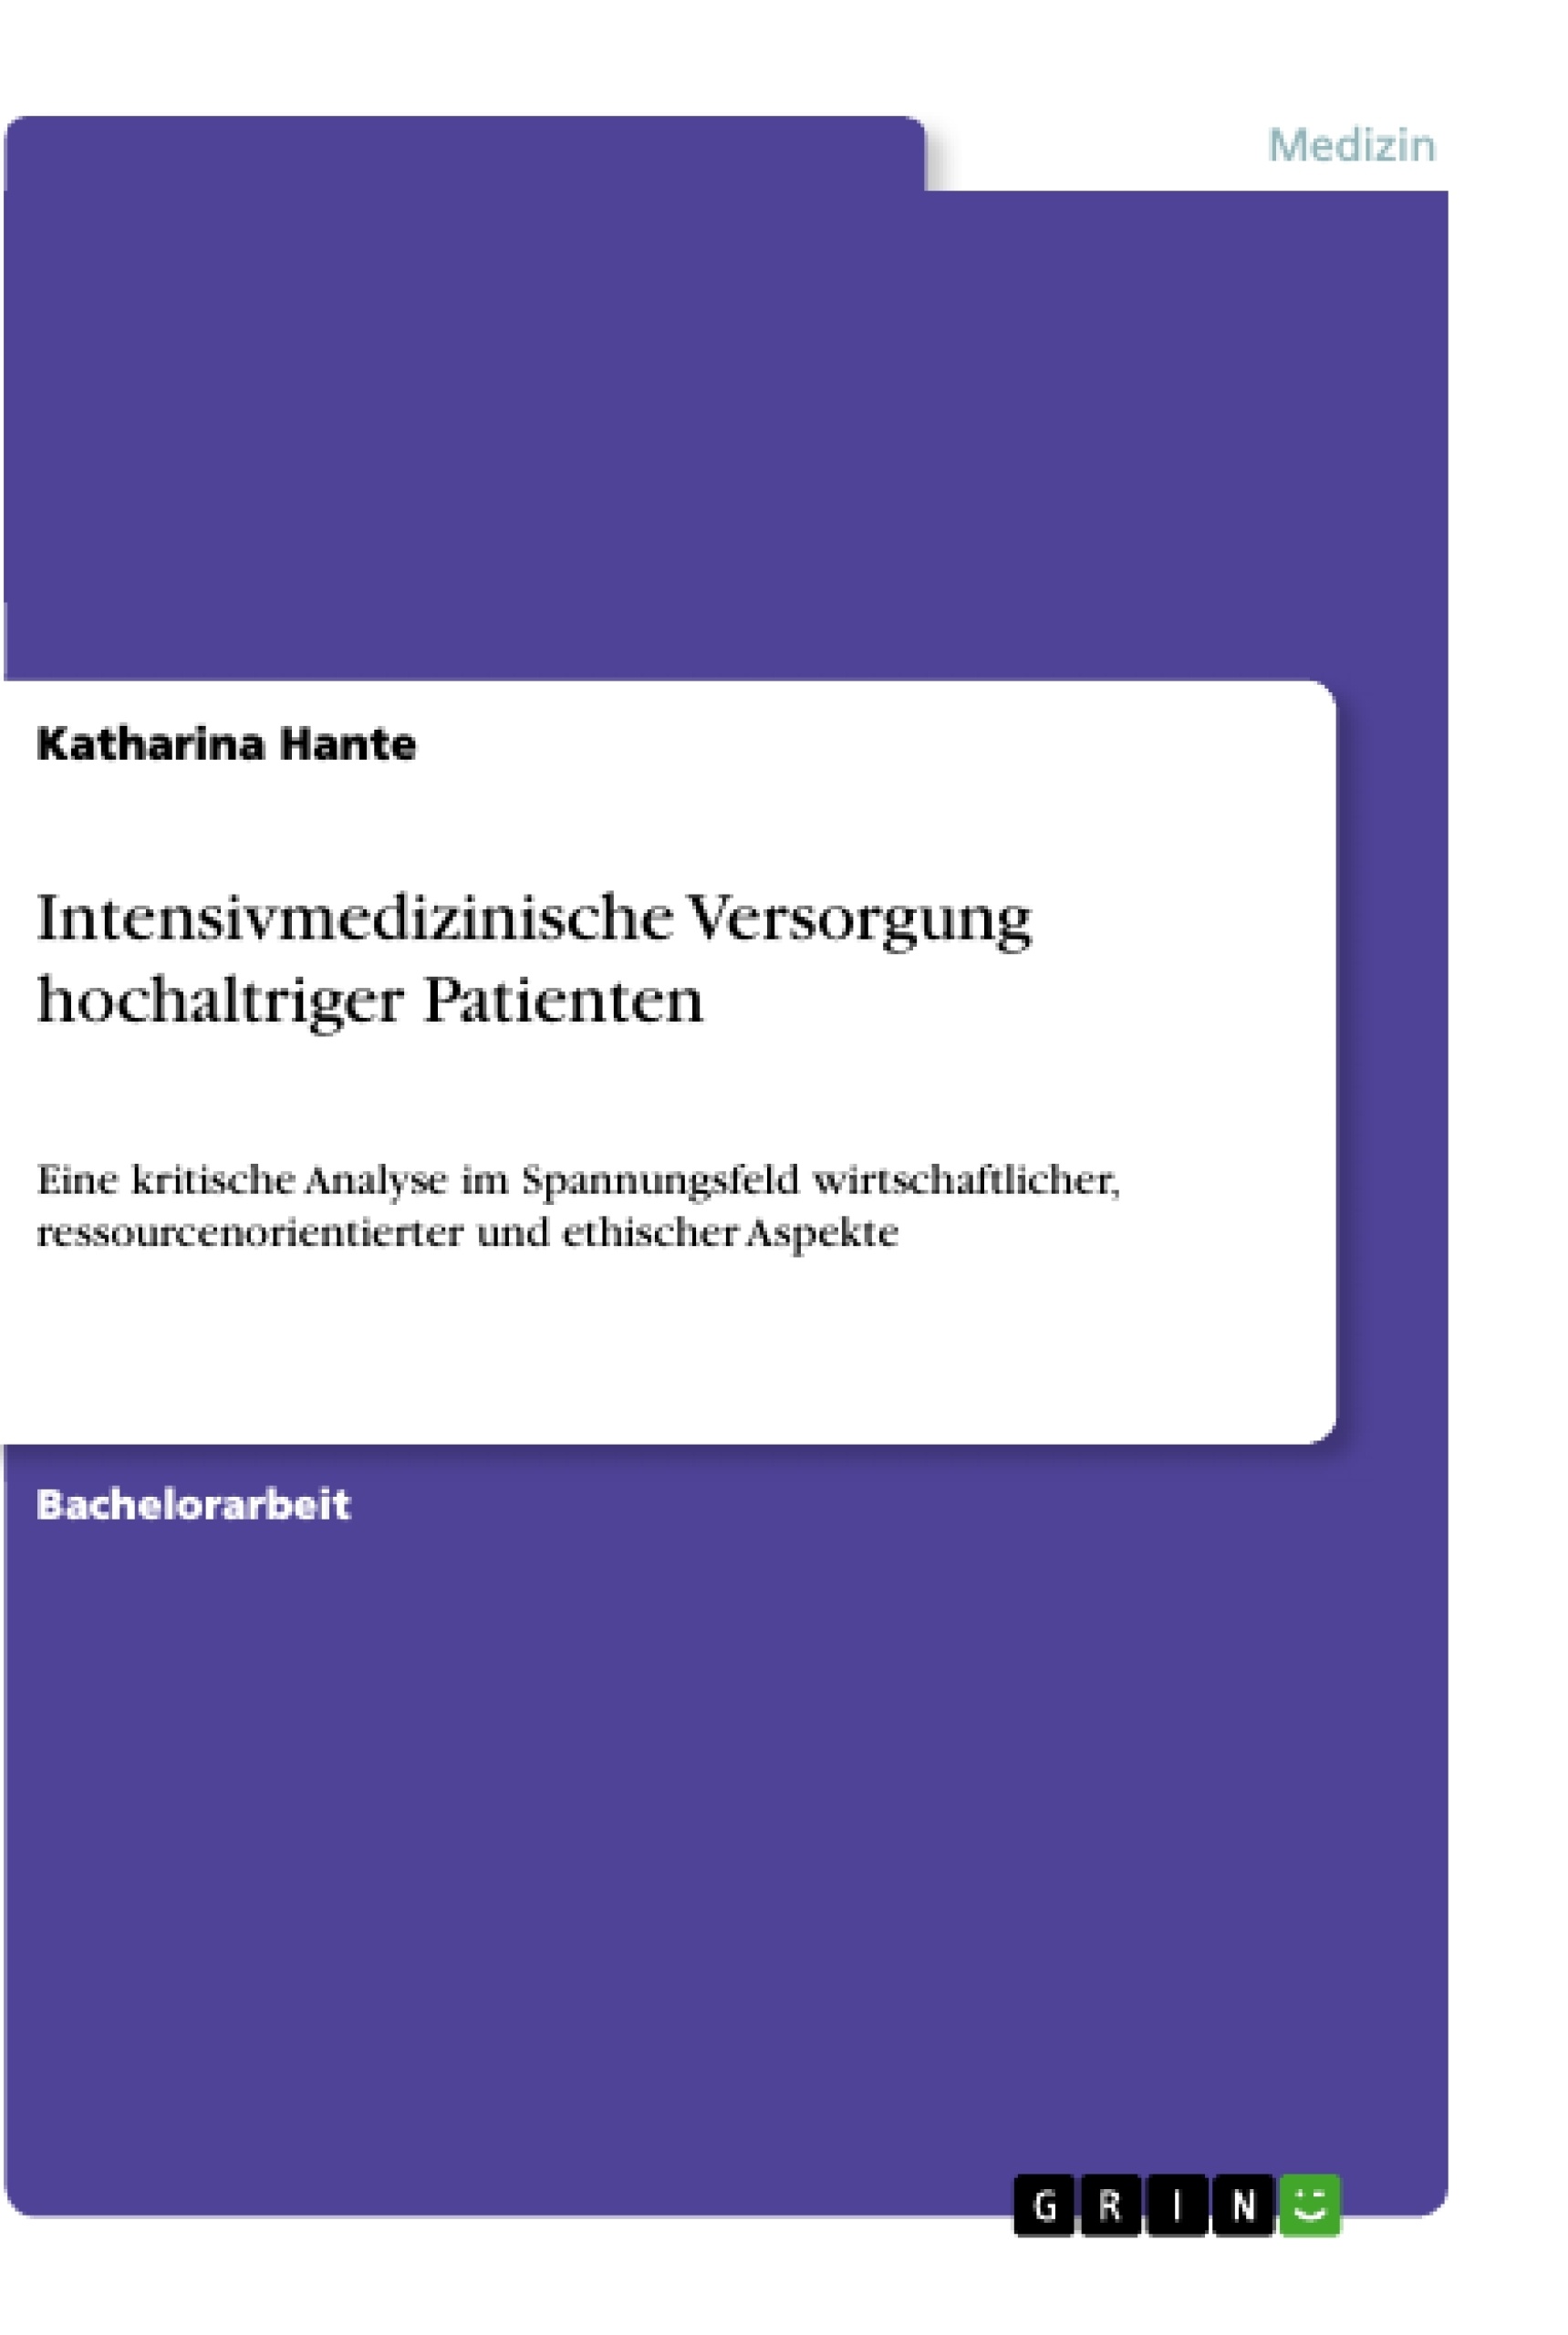 Title: Intensivmedizinische Versorgung hochaltriger Patienten